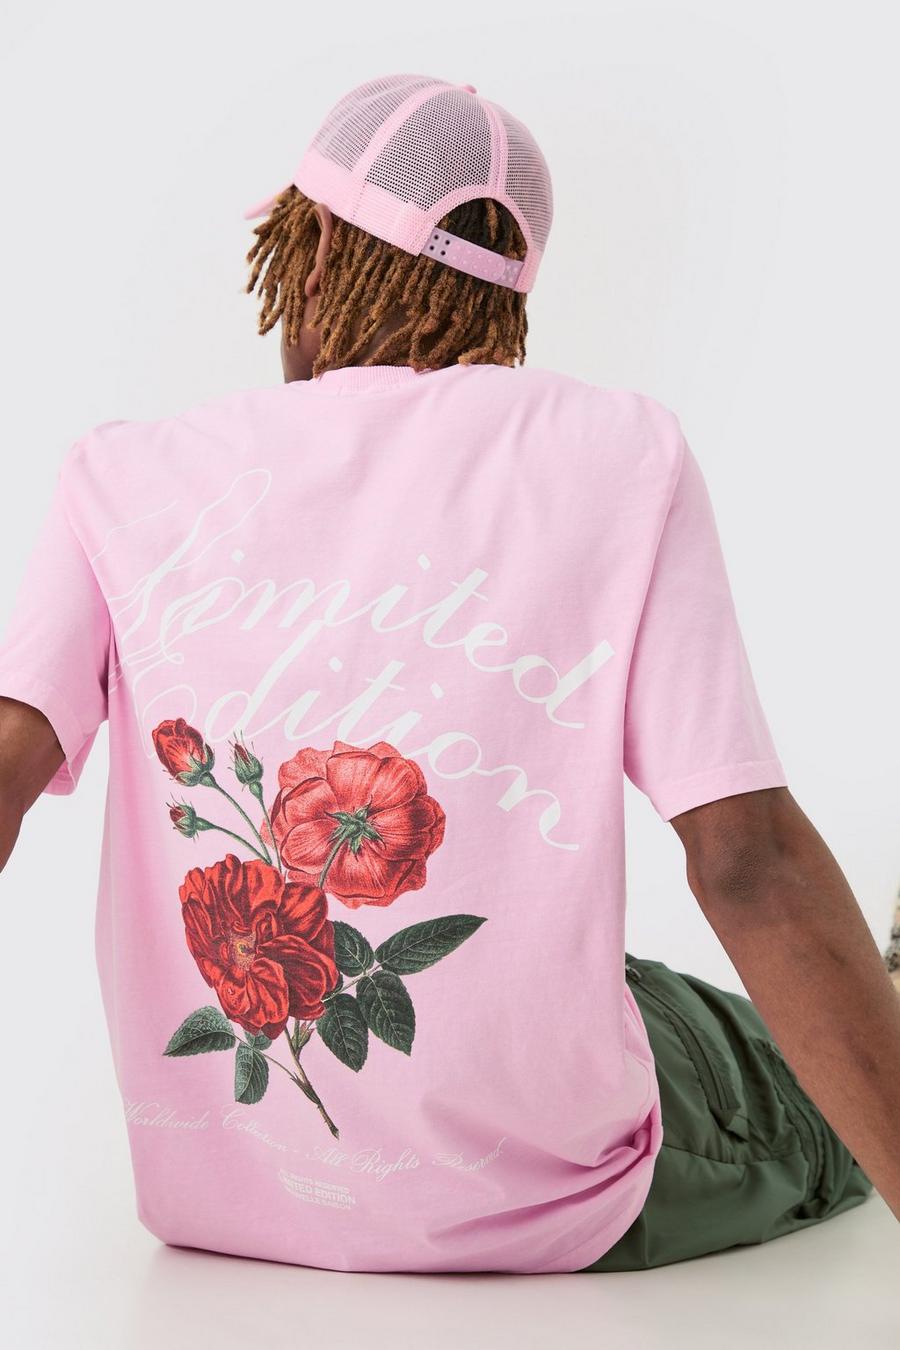 Camiseta Tall con estampado gráfico rosa de flores Lmtd Edition, Pink image number 1